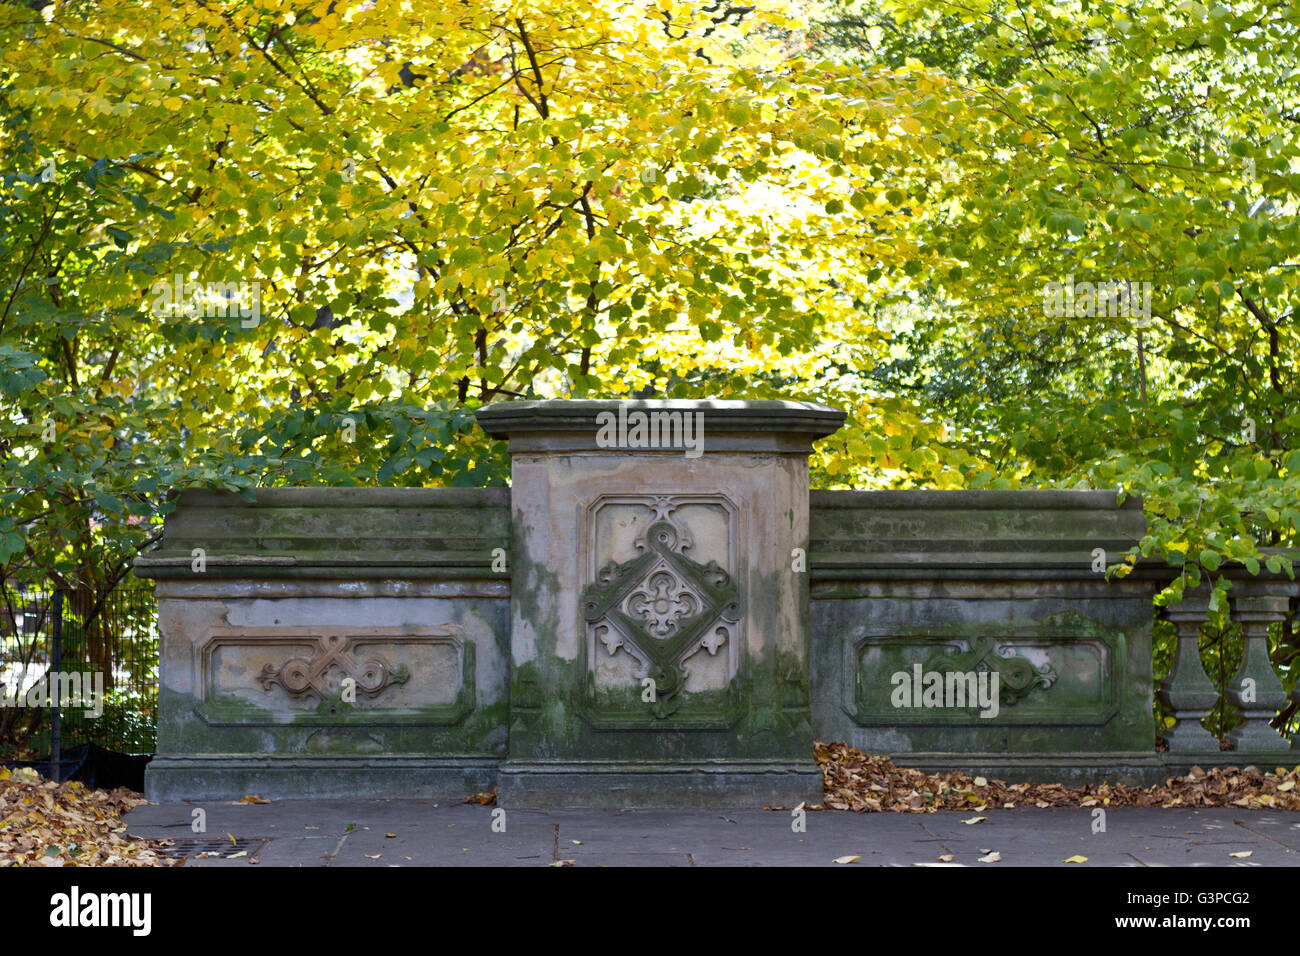 Architektonisches Detail von einer Fußgängerbrücke mit grüner Patina umgeben von Herbstlaub im Central Park Stockfoto